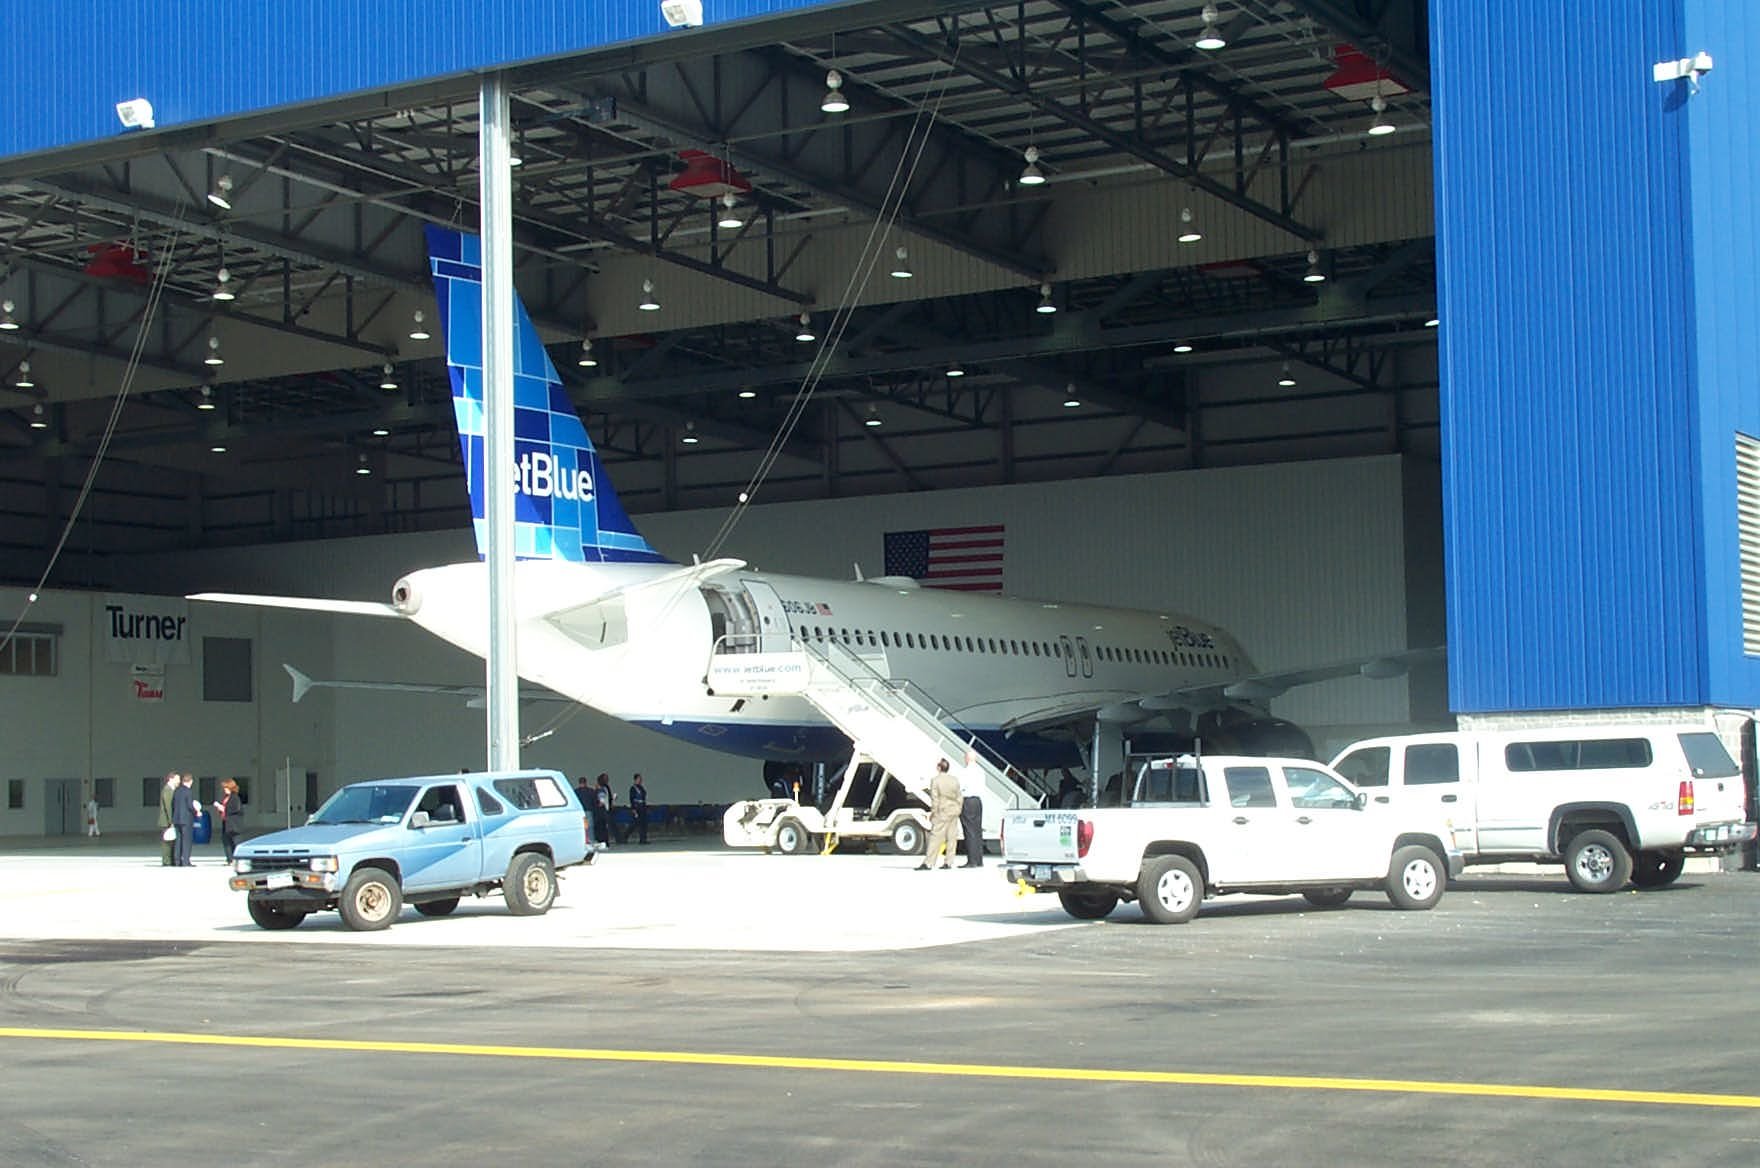 Plane entering hangar 